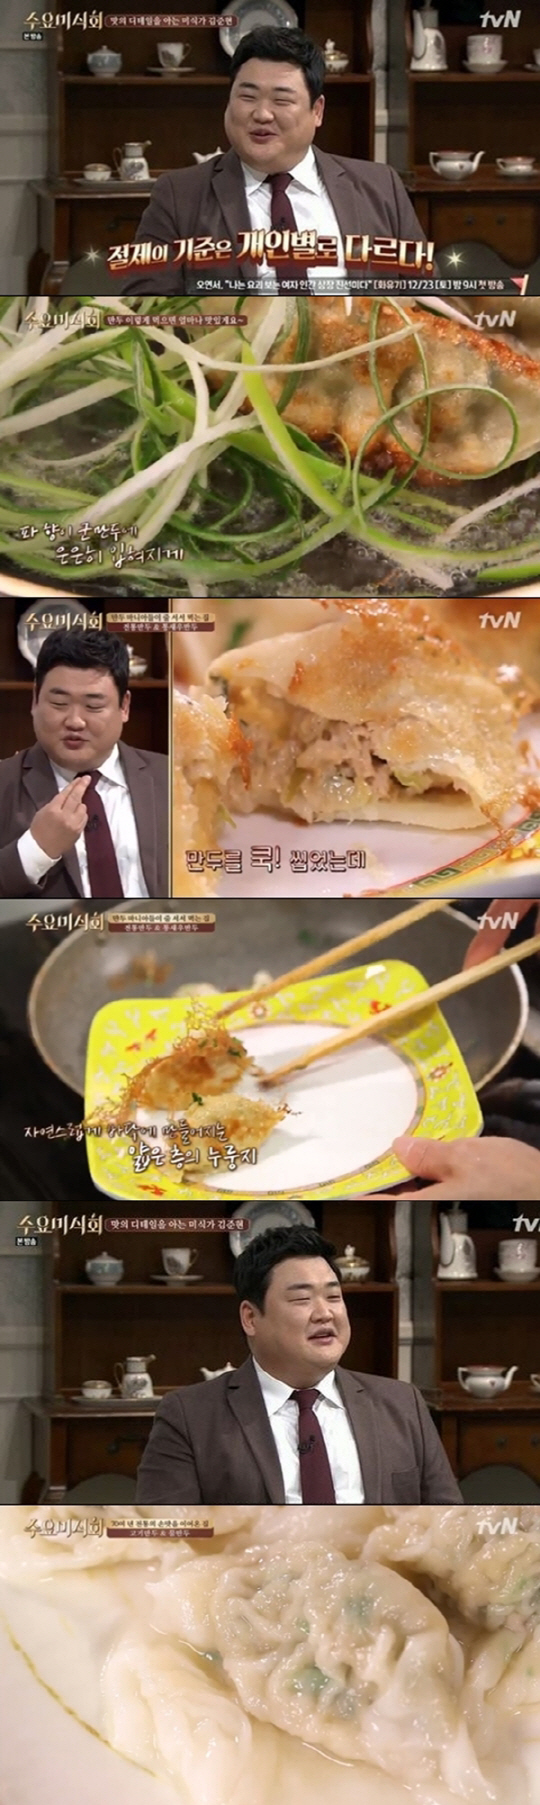 ‘수요미식회’ 만두 맛집 어디? “숙대 입구와 서촌” 김준현 “파 얇게 썰어 같이 익혀 먹음 맛있다”